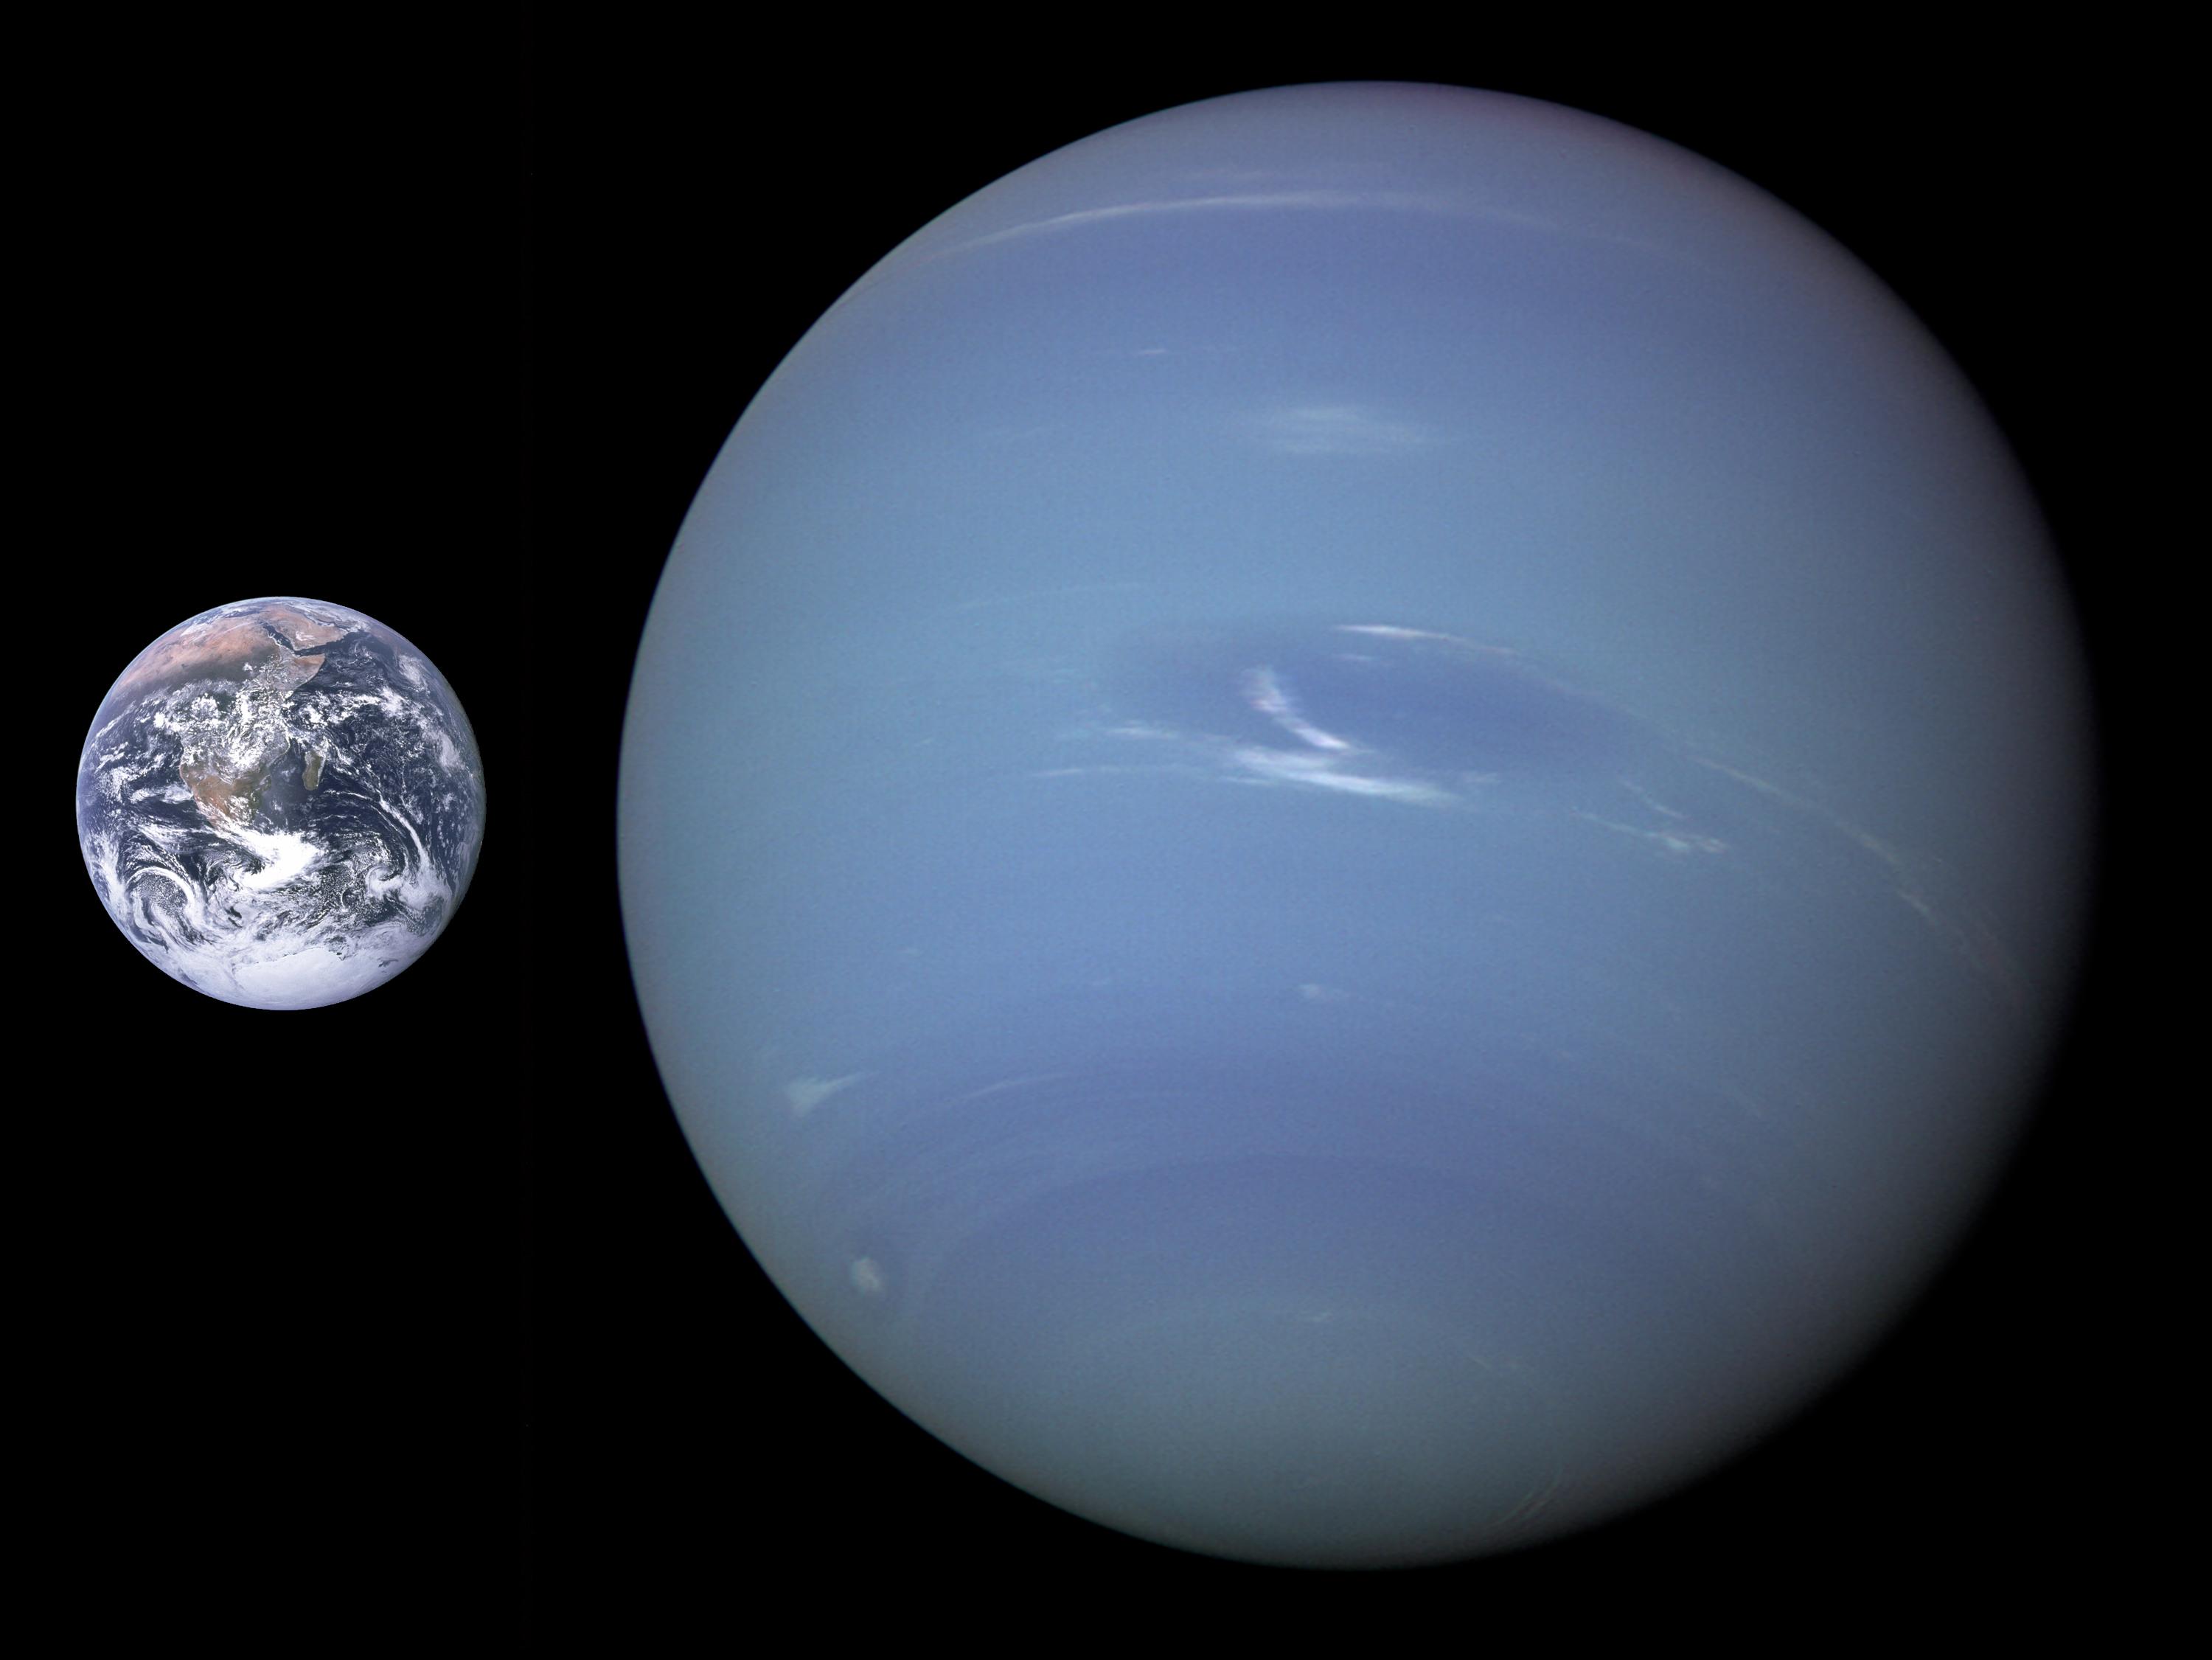 海王星是太阳系八大行星中距离太阳最远的一颗,外观呈现更俏皮的淡